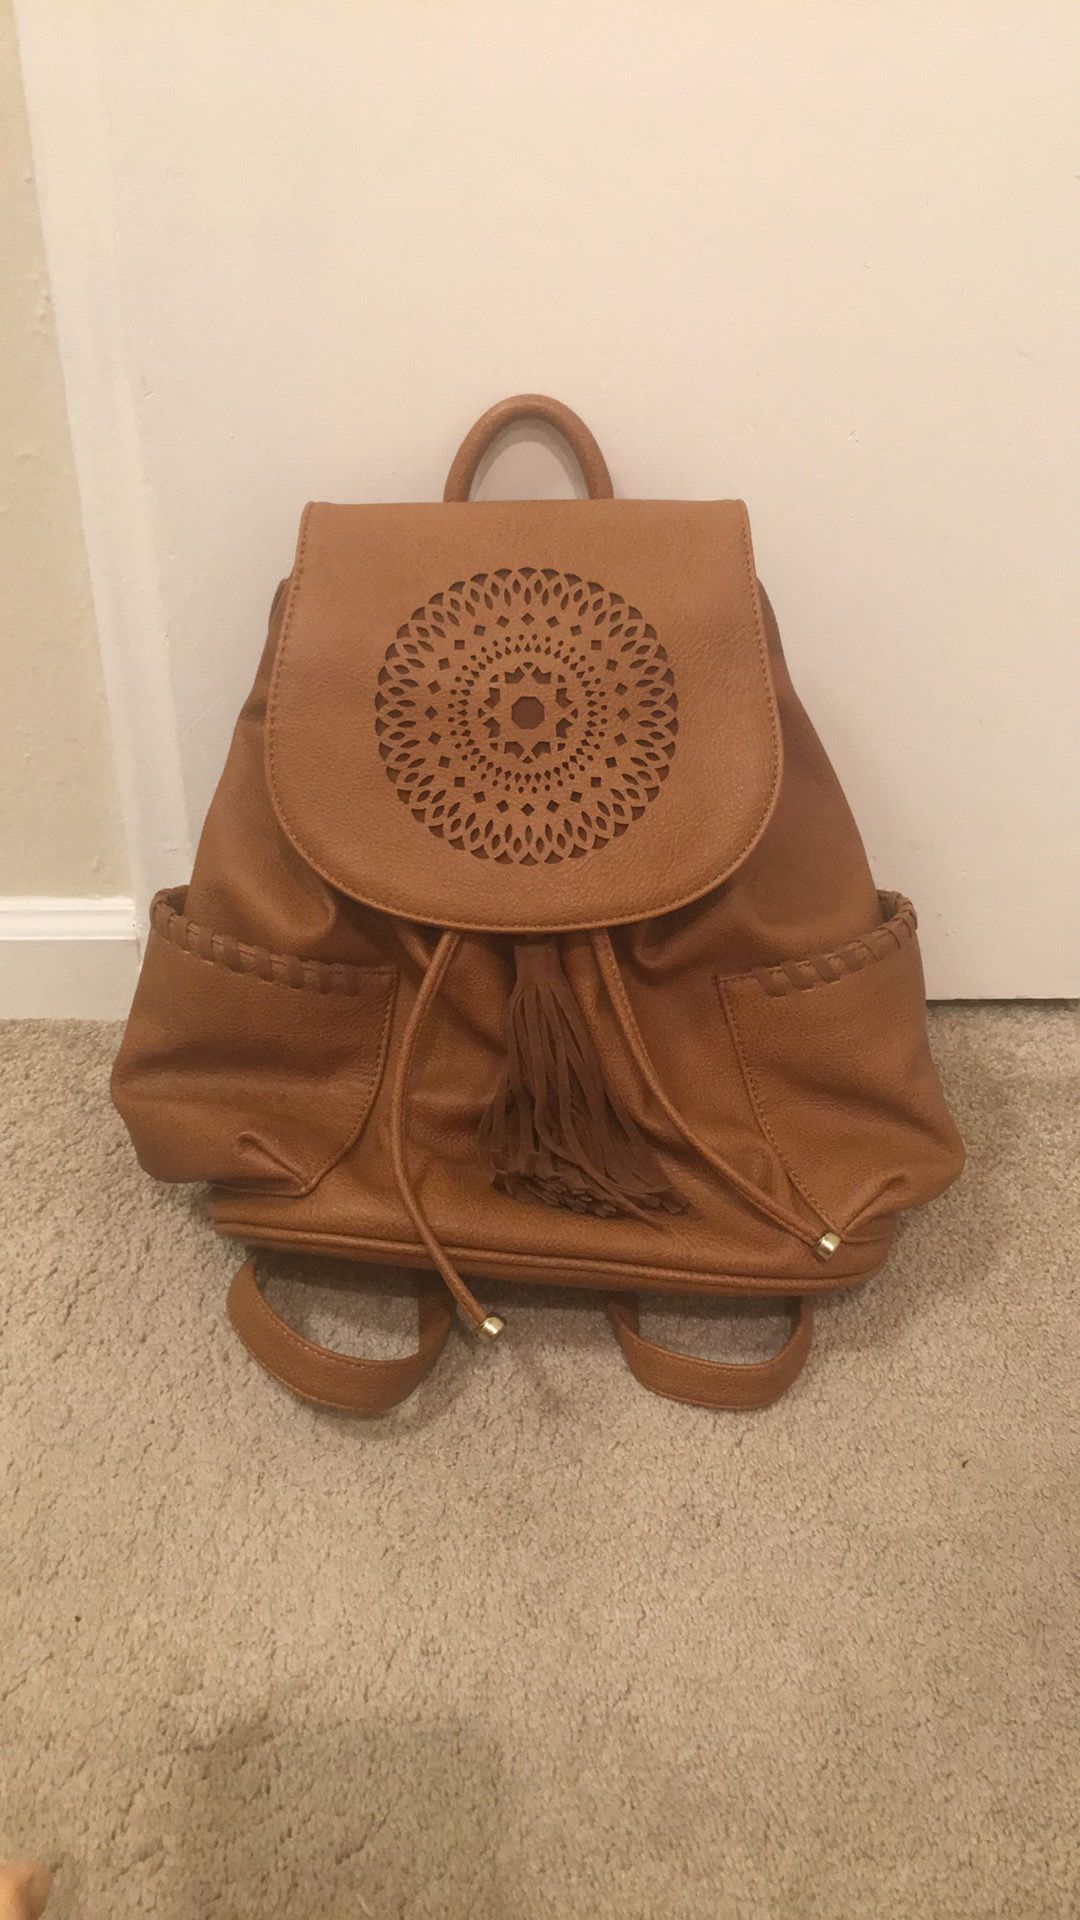 Cute backpack purse